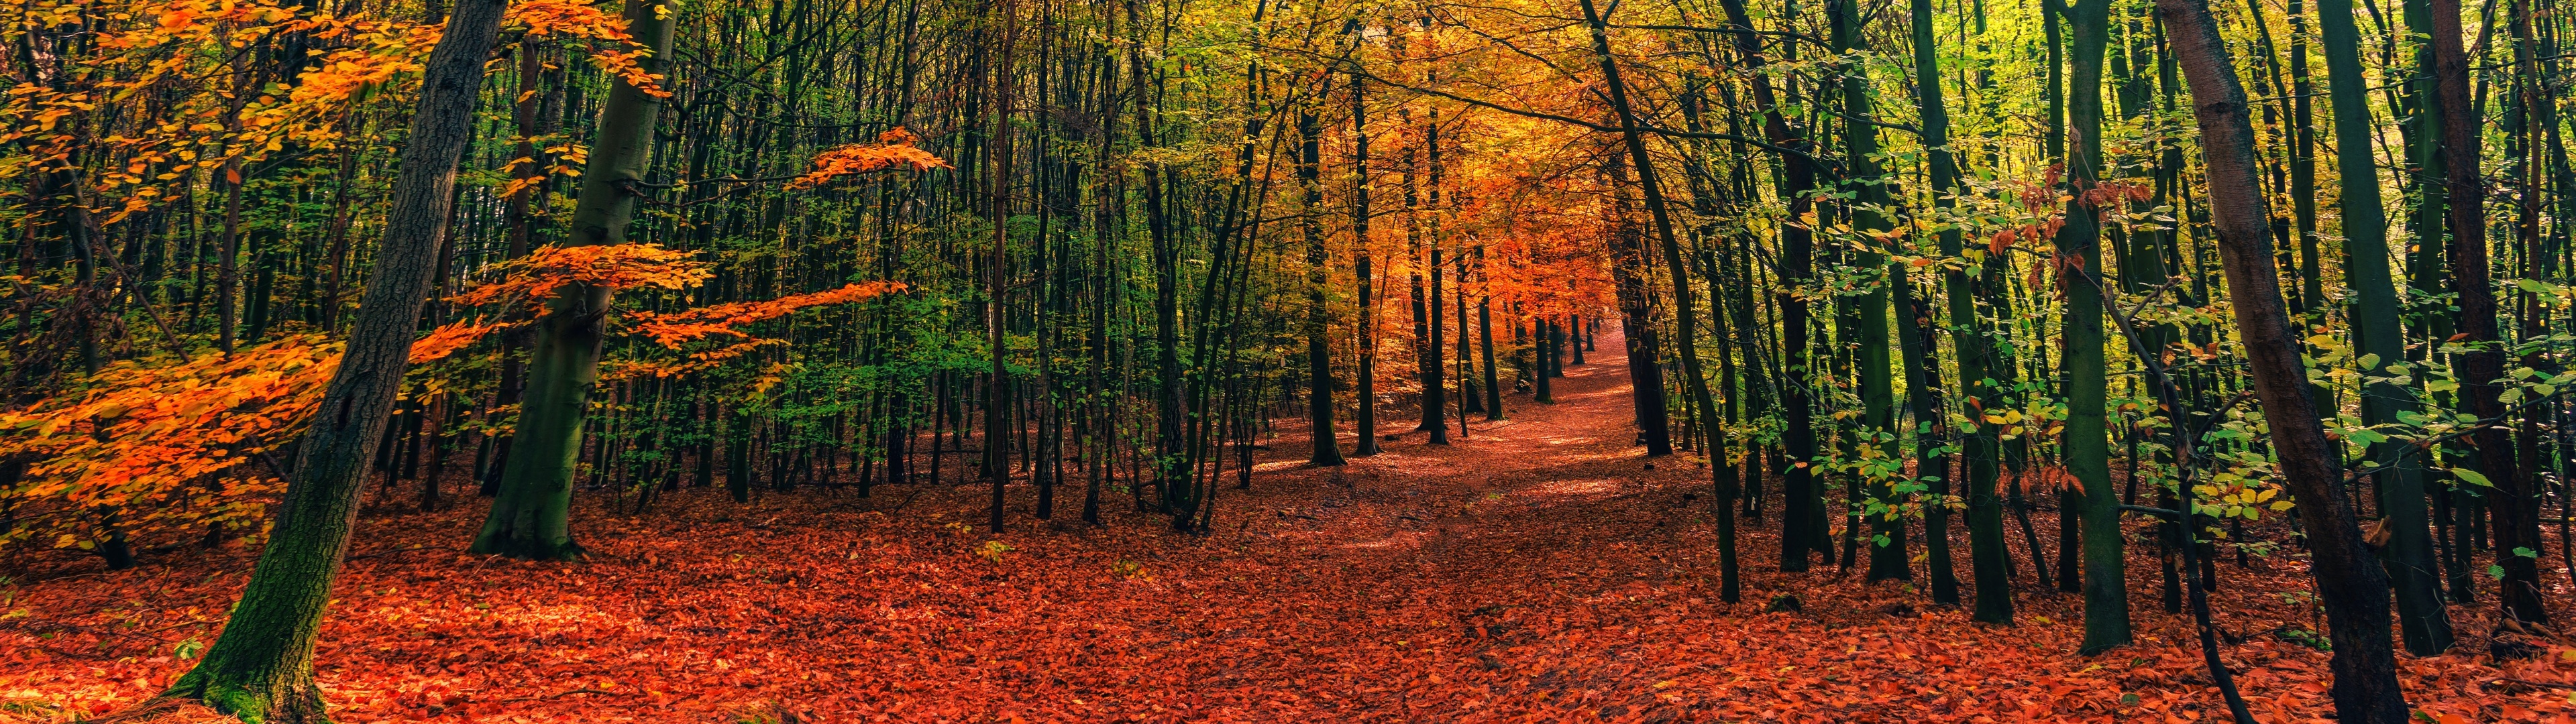 Bức tranh này đưa bạn đến với mùa thu rực rỡ nhất với những gam màu đỏ rực rỡ, vàng óng ánh và cam nồng nàn. Hãy tận hưởng cảm giác êm ái của mùa thu trong bức tranh.